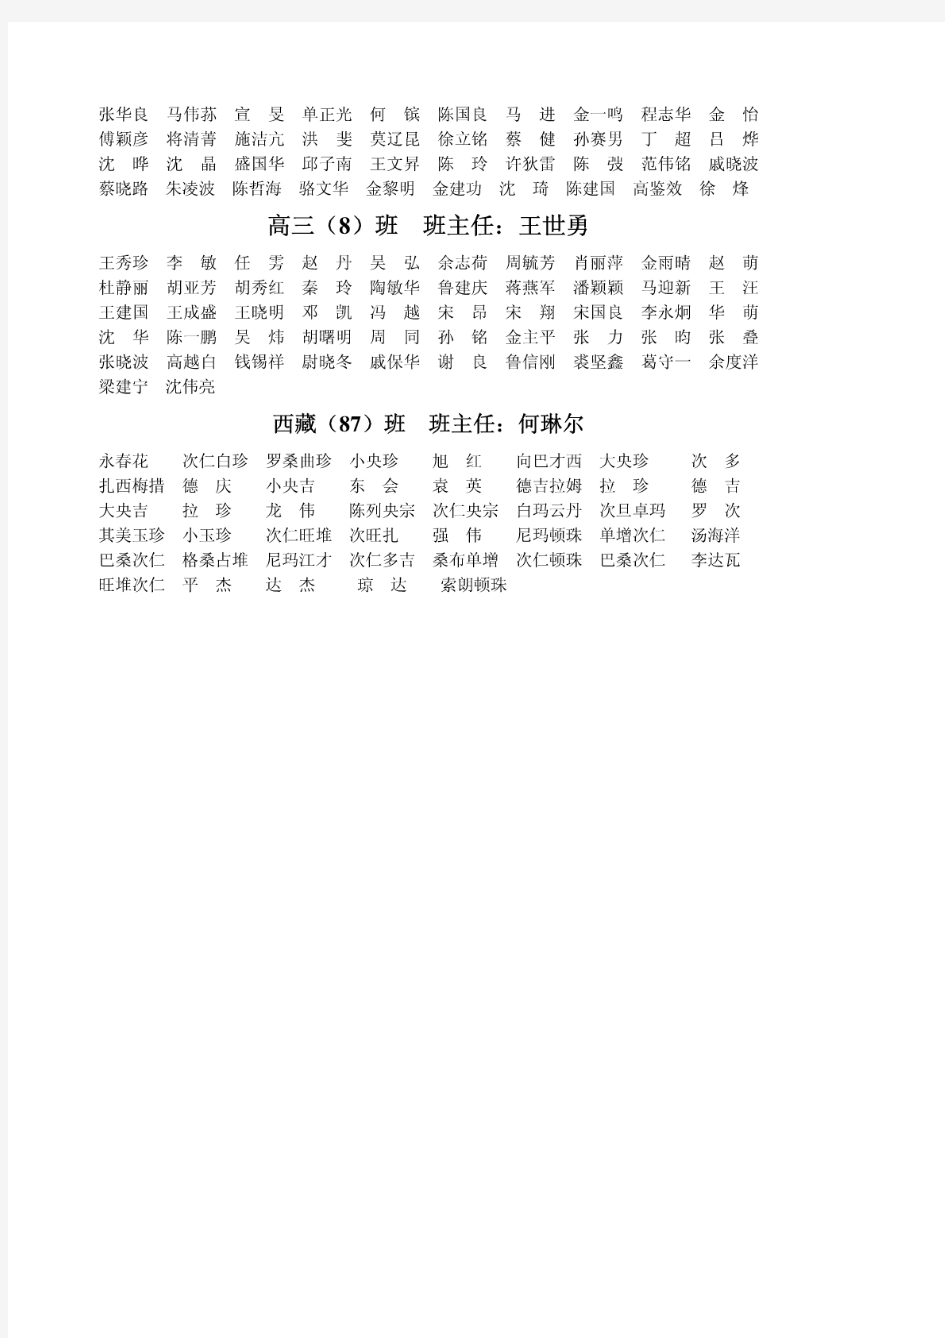 高三(3)班班主任：俞建种-绍兴市第一中学首页